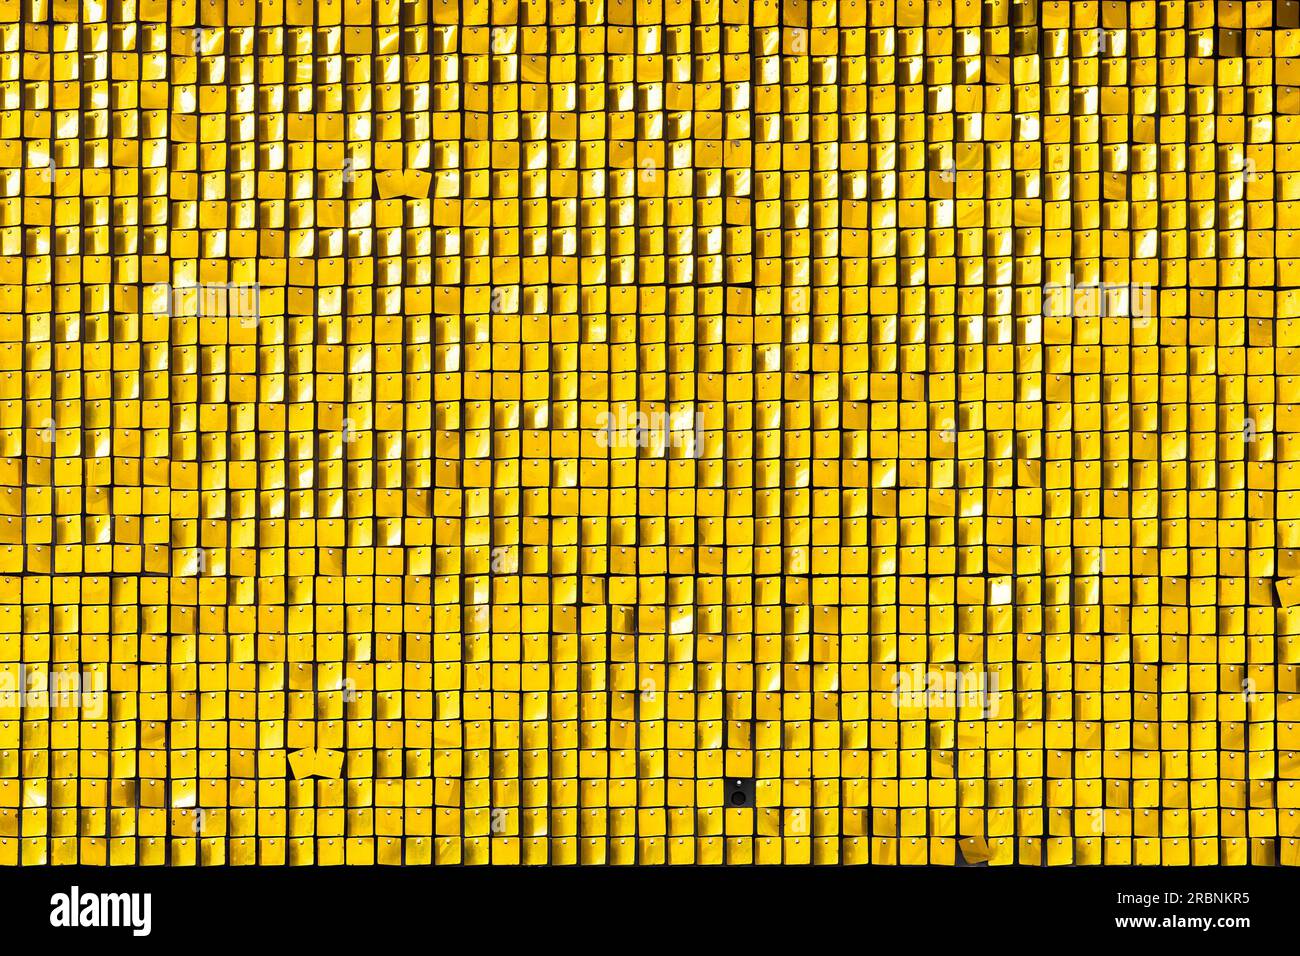 Ein Display aus kleinen gelben Quadraten aus Kunststoff und einer Gruppe nahe beieinander. Die Quadrate schimmern im Sonnenlicht, während eine Brise sie sanft bewegt Stockfoto